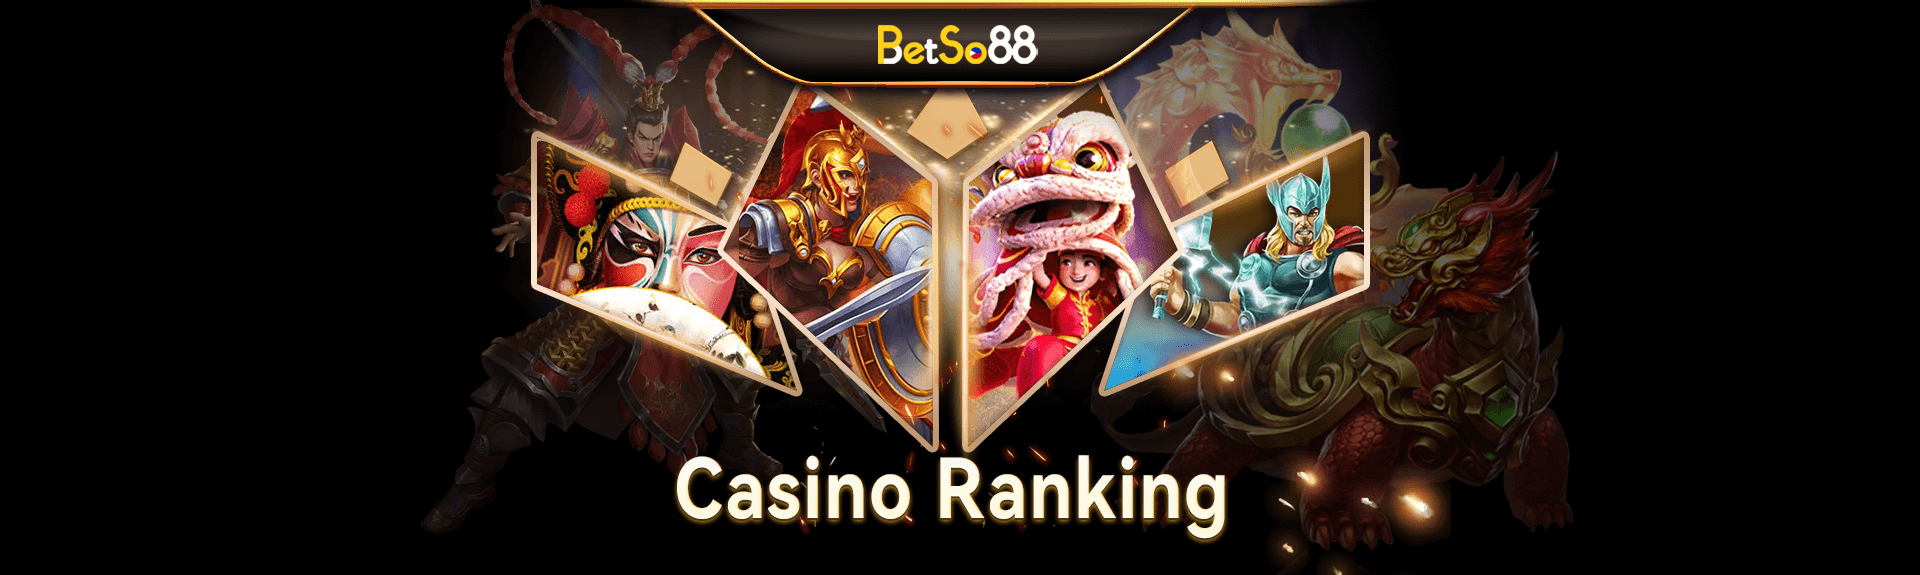 Casino Ranking